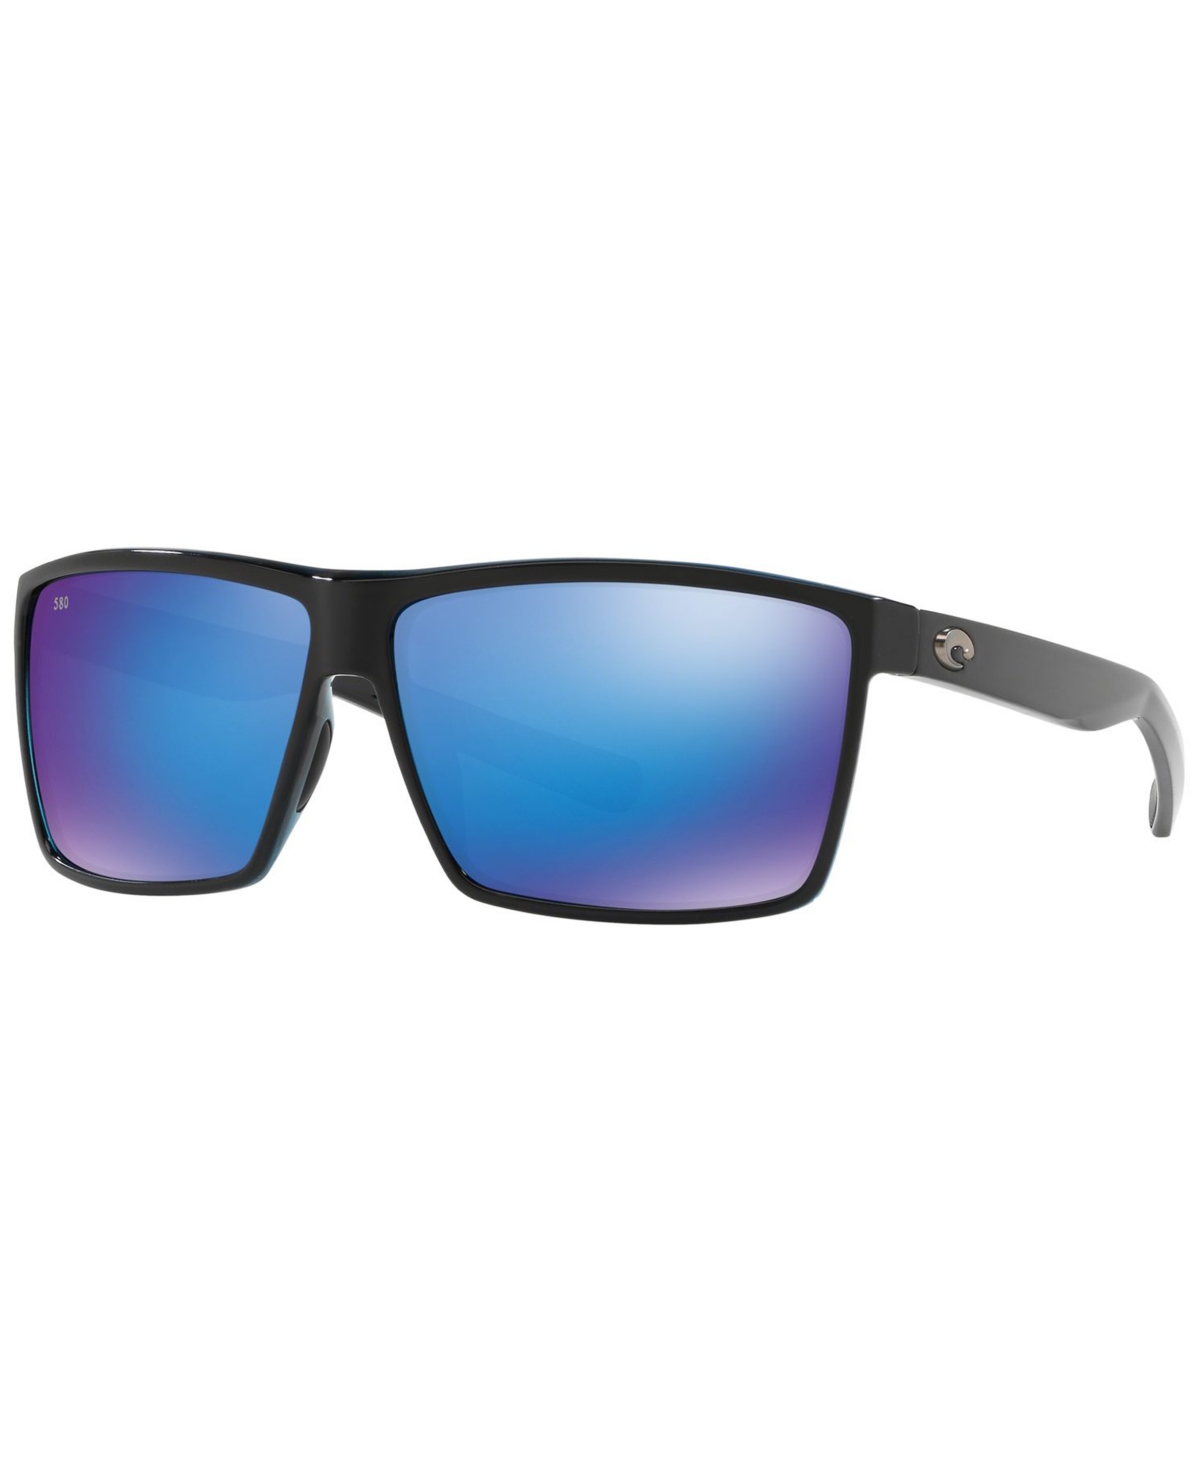 Costa Del Mar Polarized Sunglasses, Rincon 64